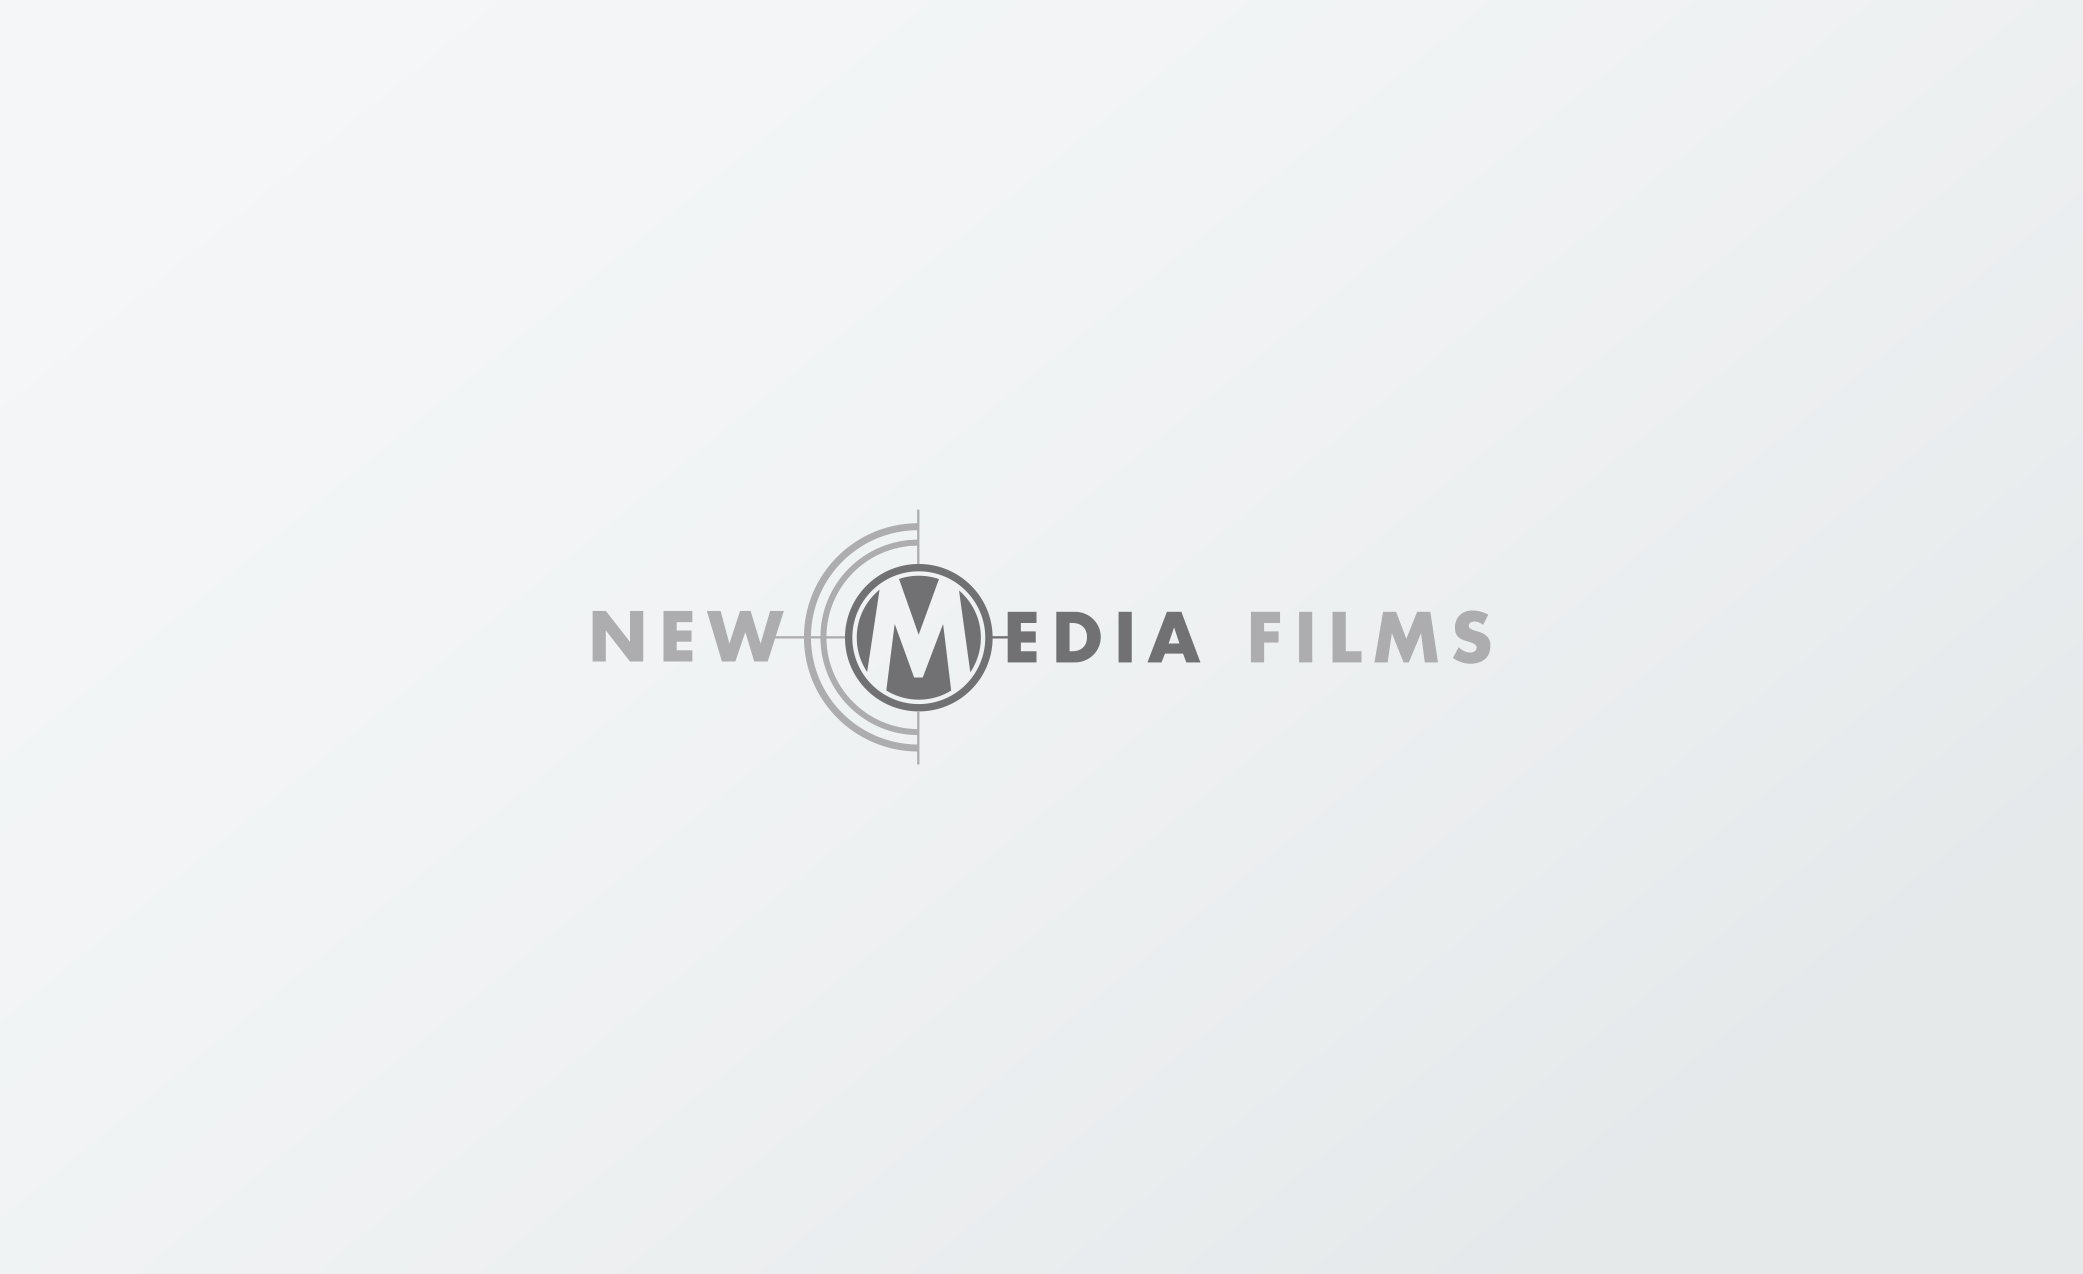 New Media Films Logo